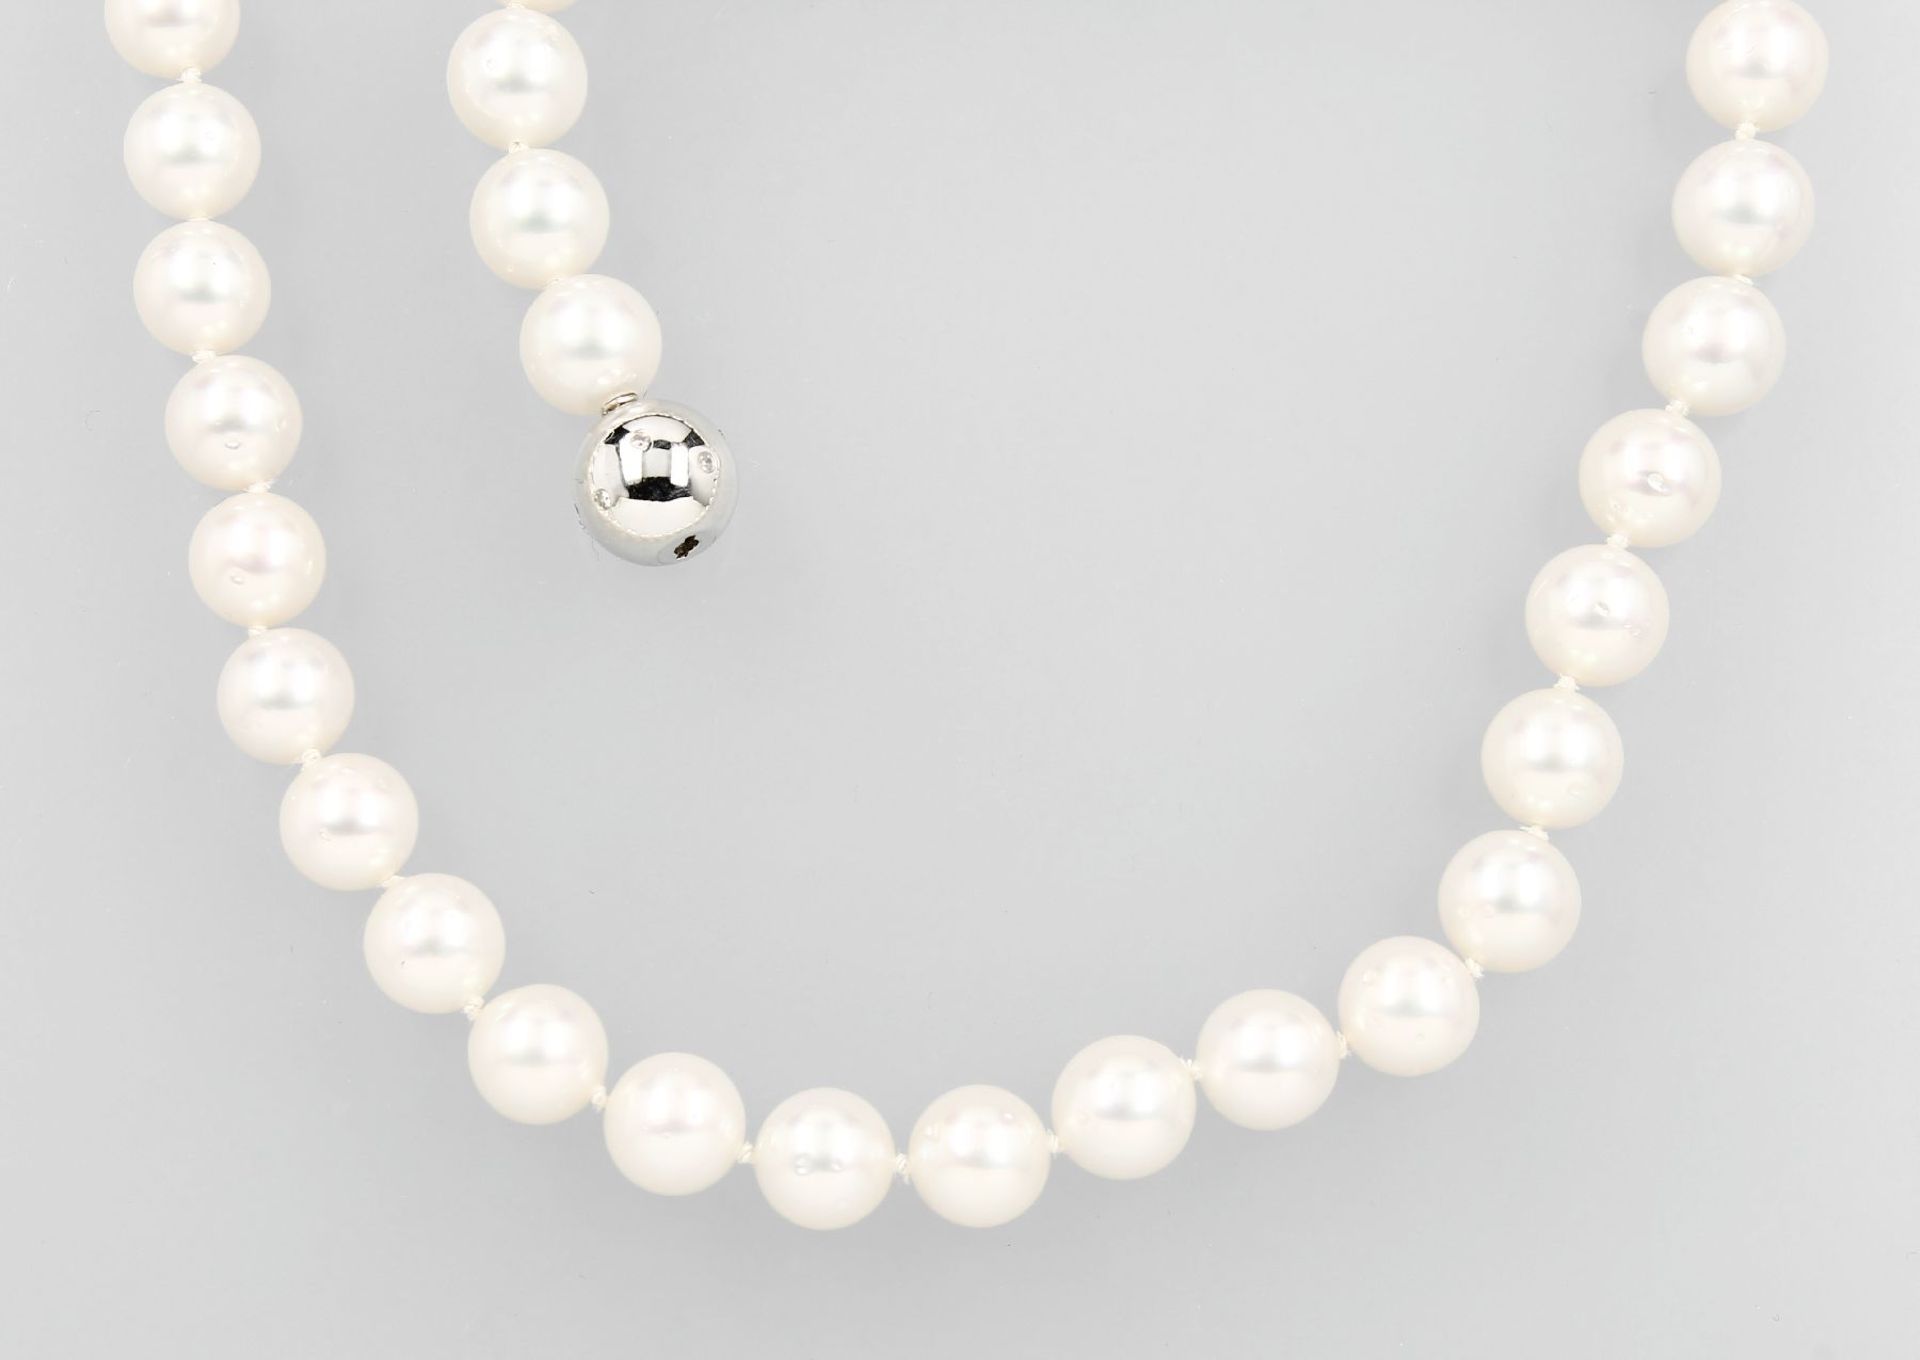 Collier aus Südseezuchtperlen, an 585/000 WG Schließe mit Brillanten, weiße Perlen, D. ca. 10 mm,